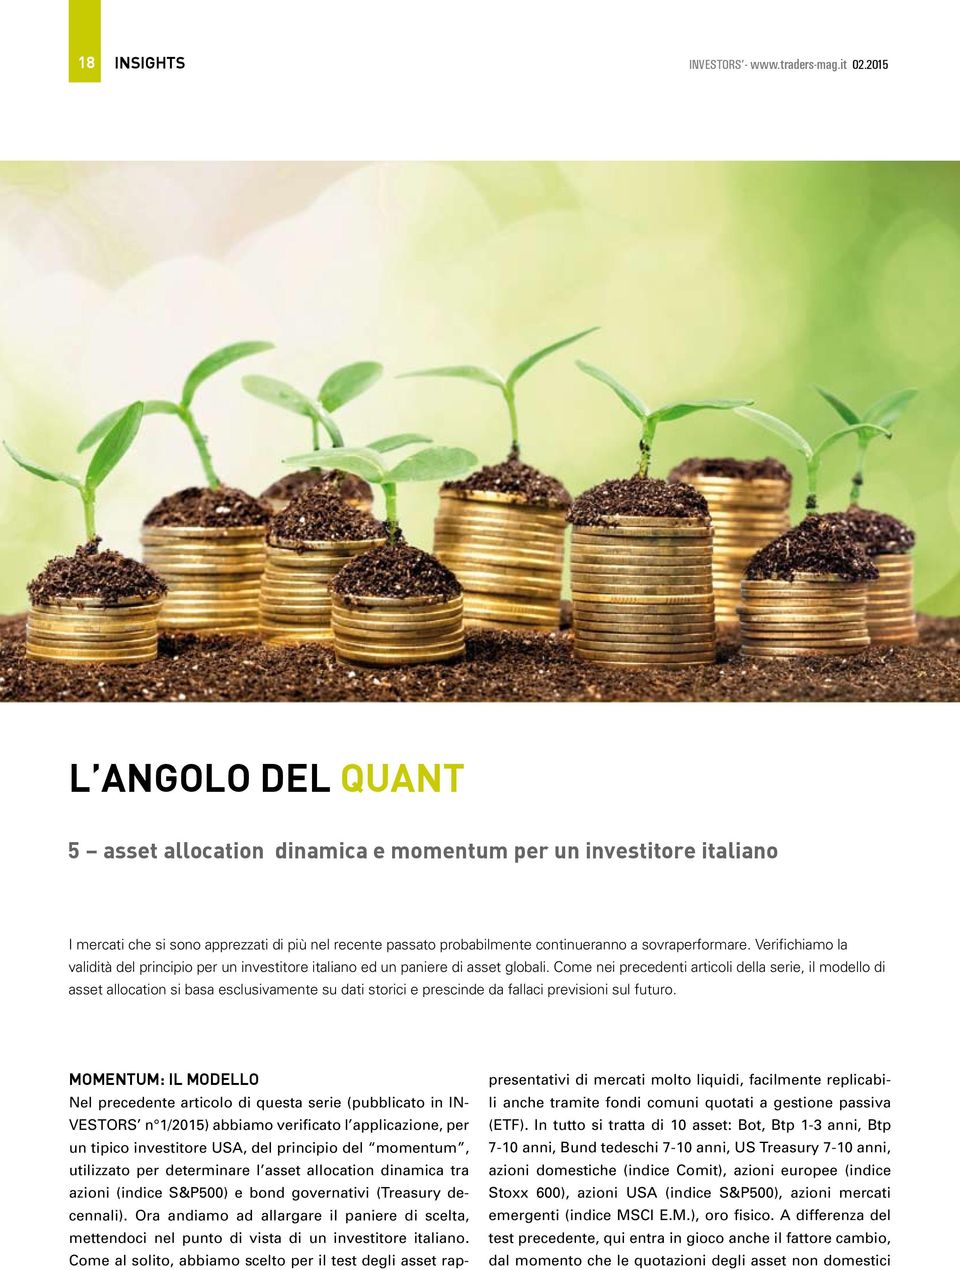 Verifichiamo la validità del principio per un investitore italiano ed un paniere di asset globali.